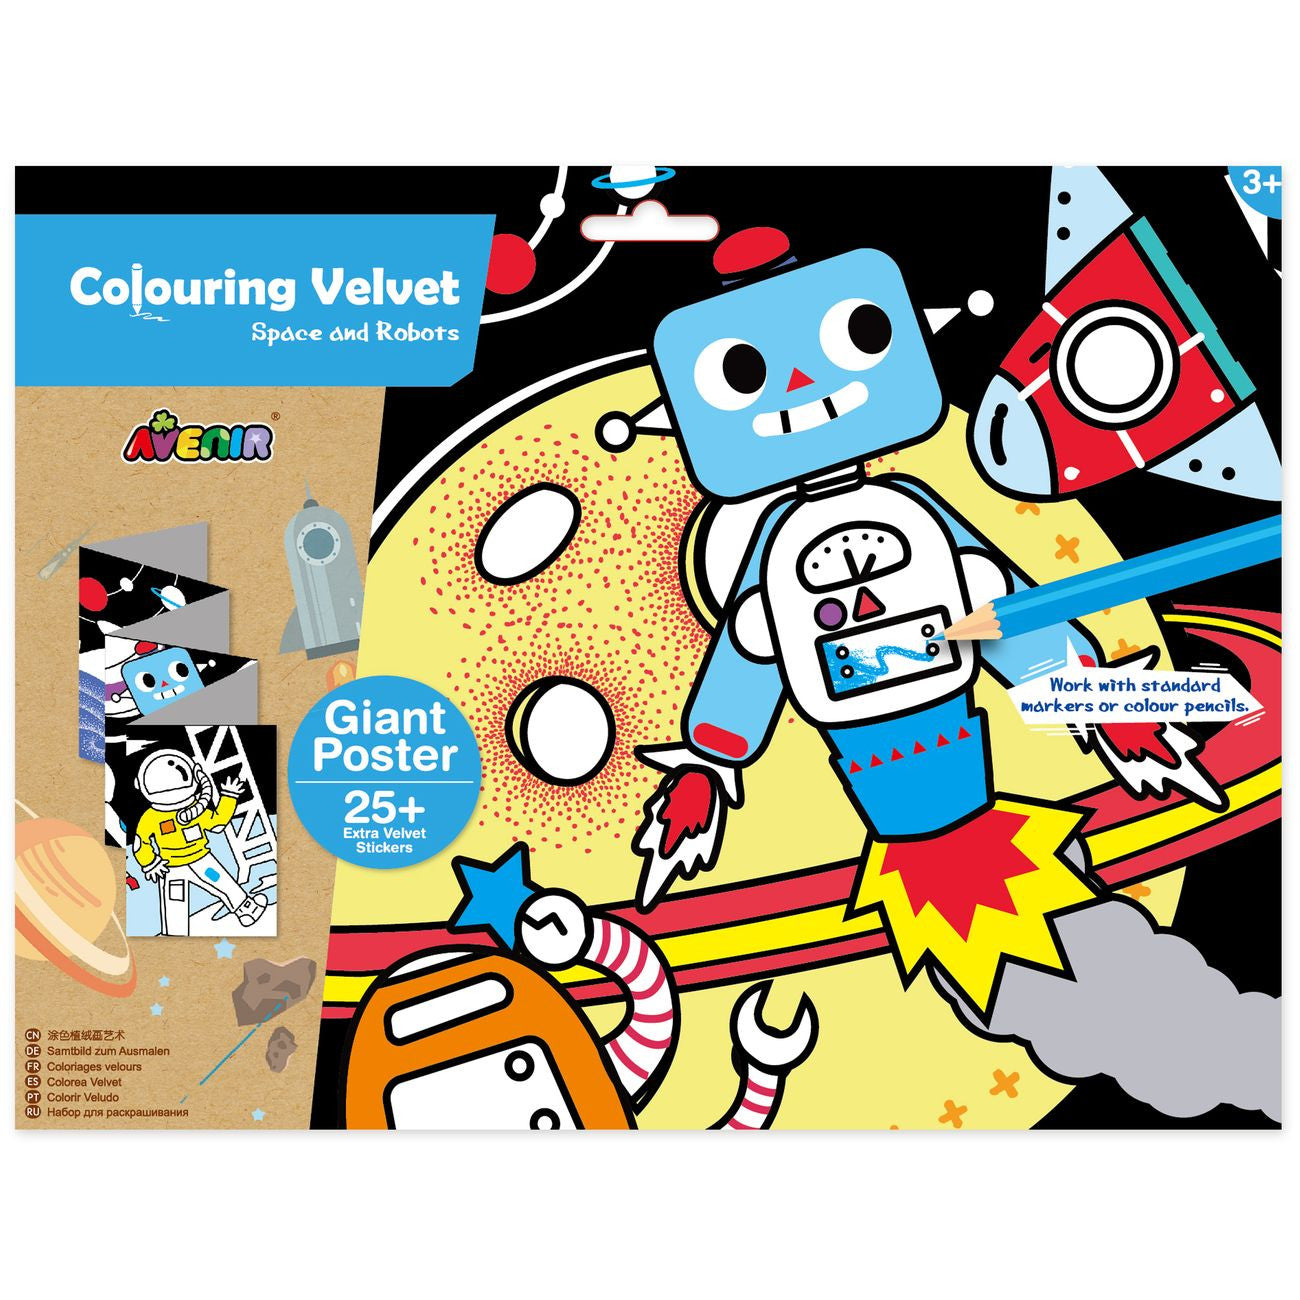 kidz-stuff-online - Colouring Velvet Kit - Space and Robots